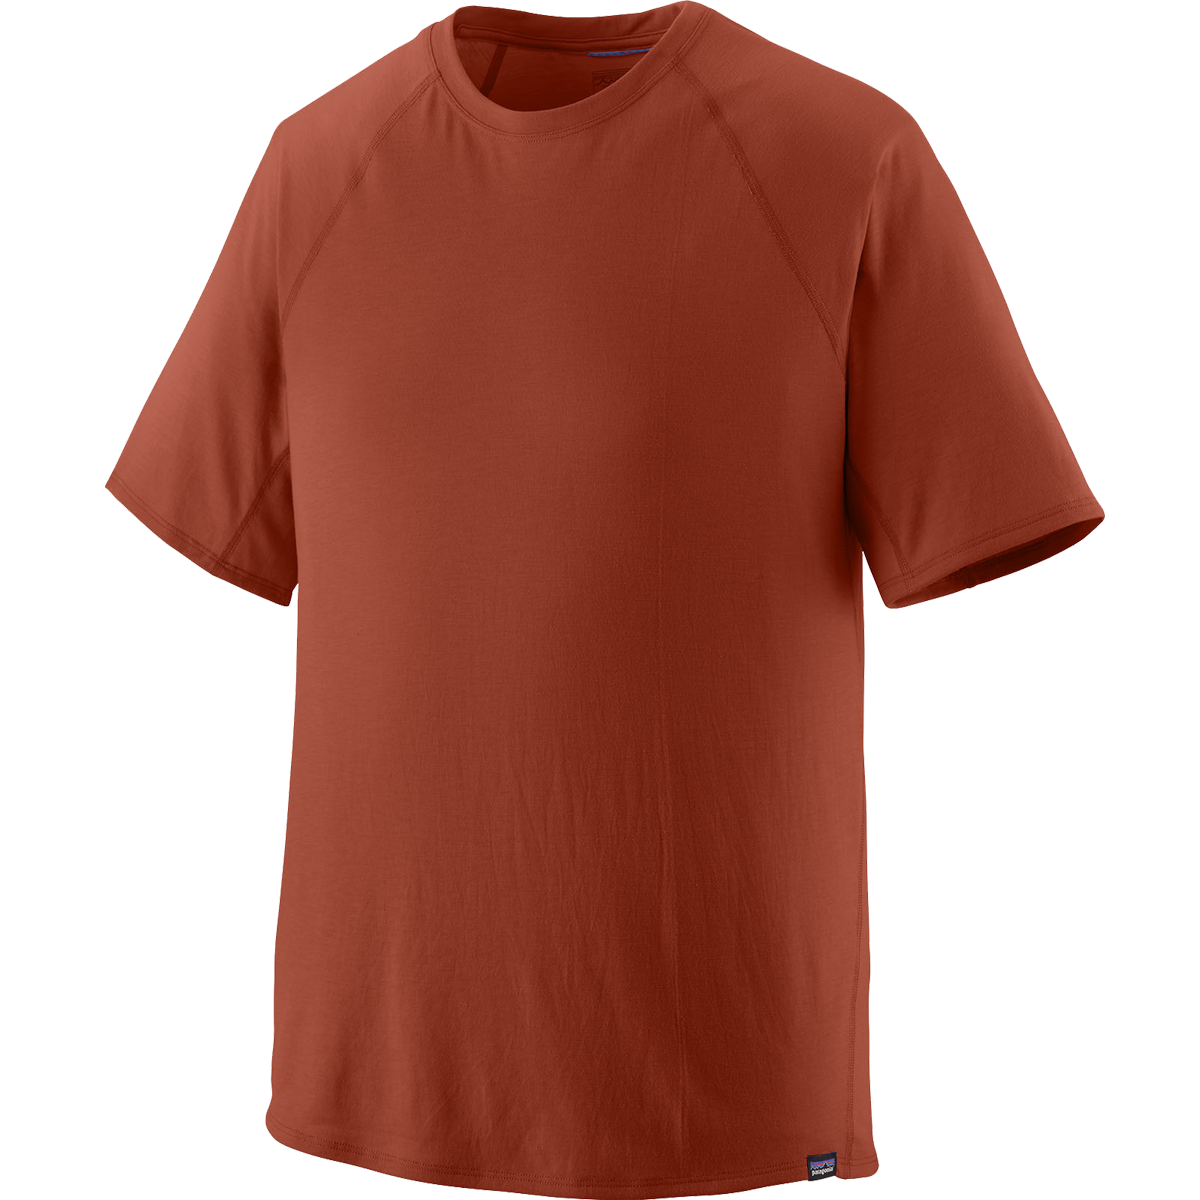 Men's Short-Sleeved Capilene Cool Trail Shirt alternate view